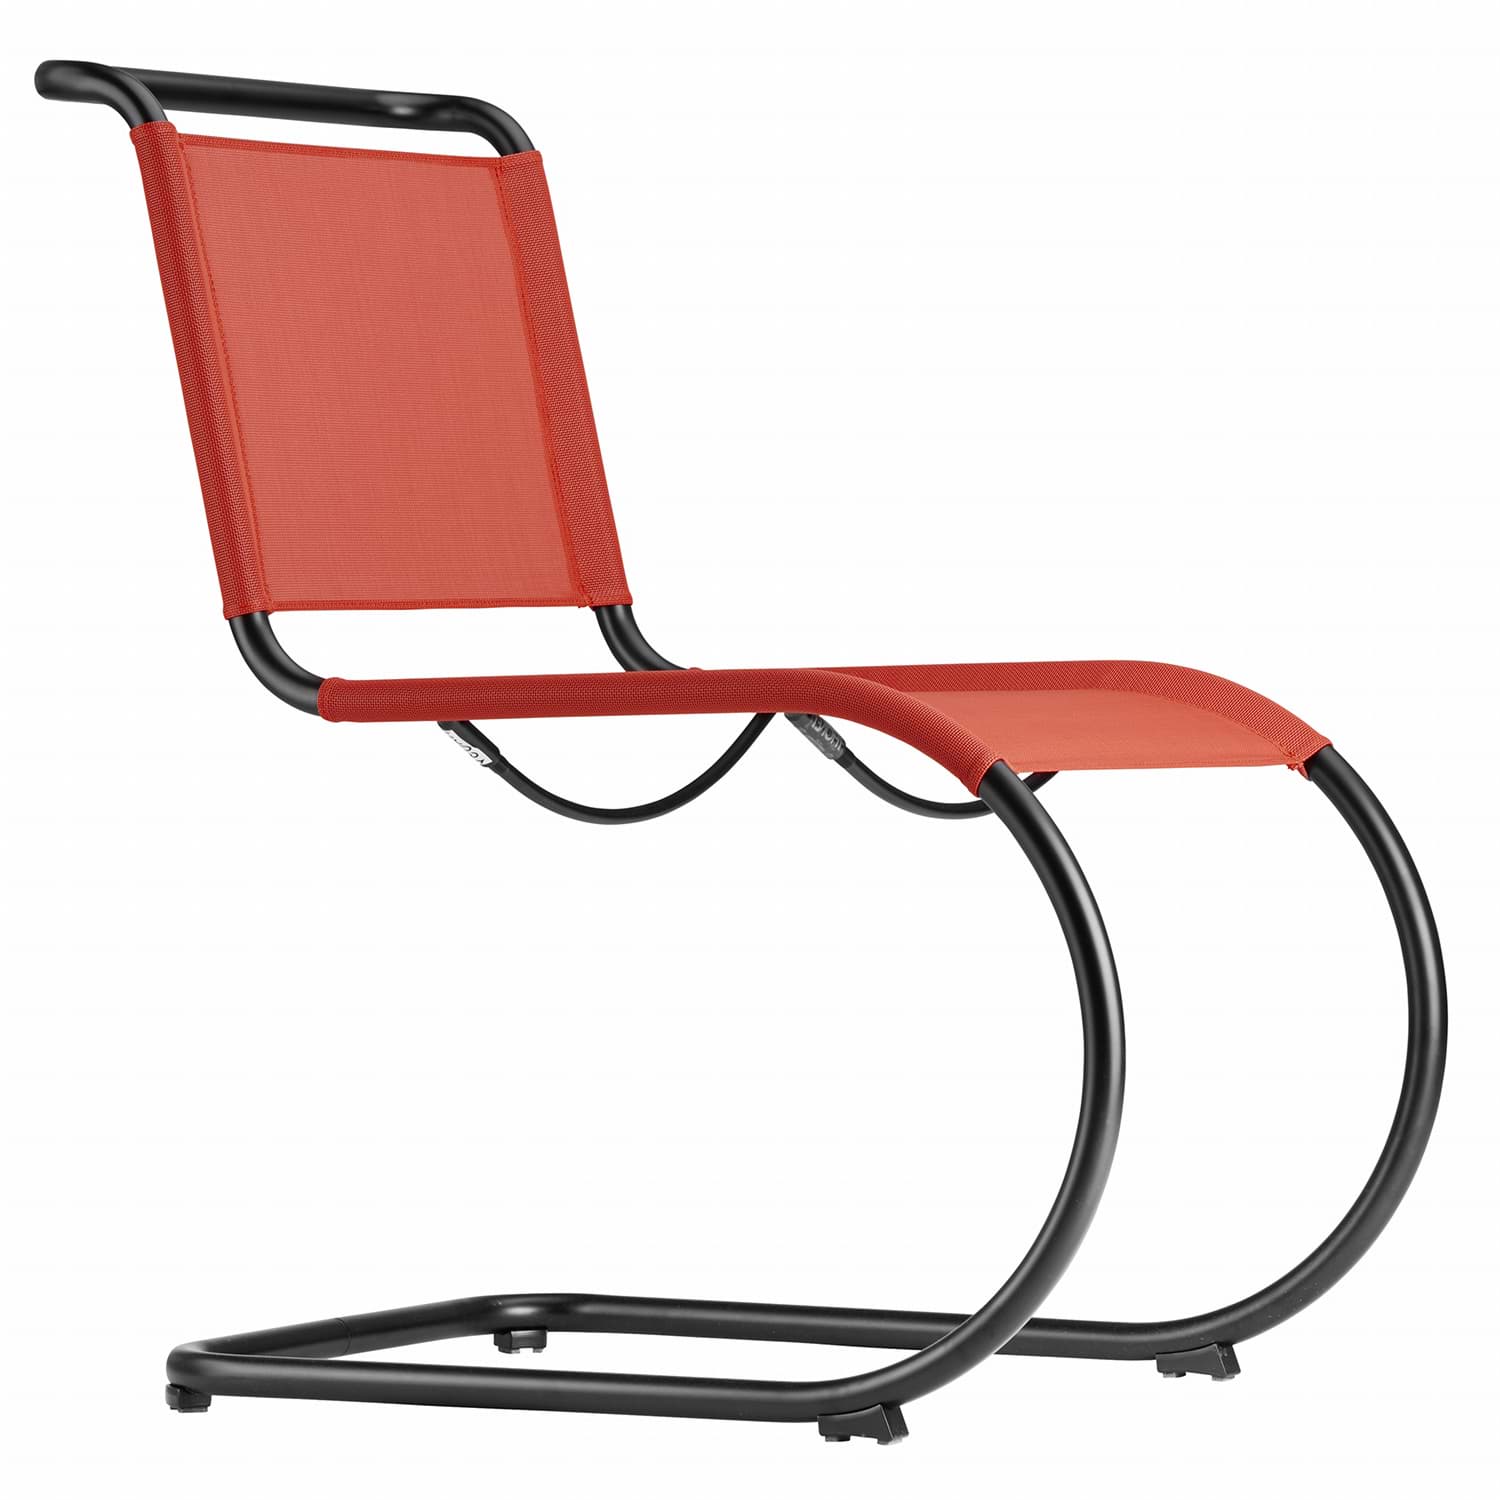 εικόνα του Mies van der Rohe καρέκλα προβόλου S 533 N